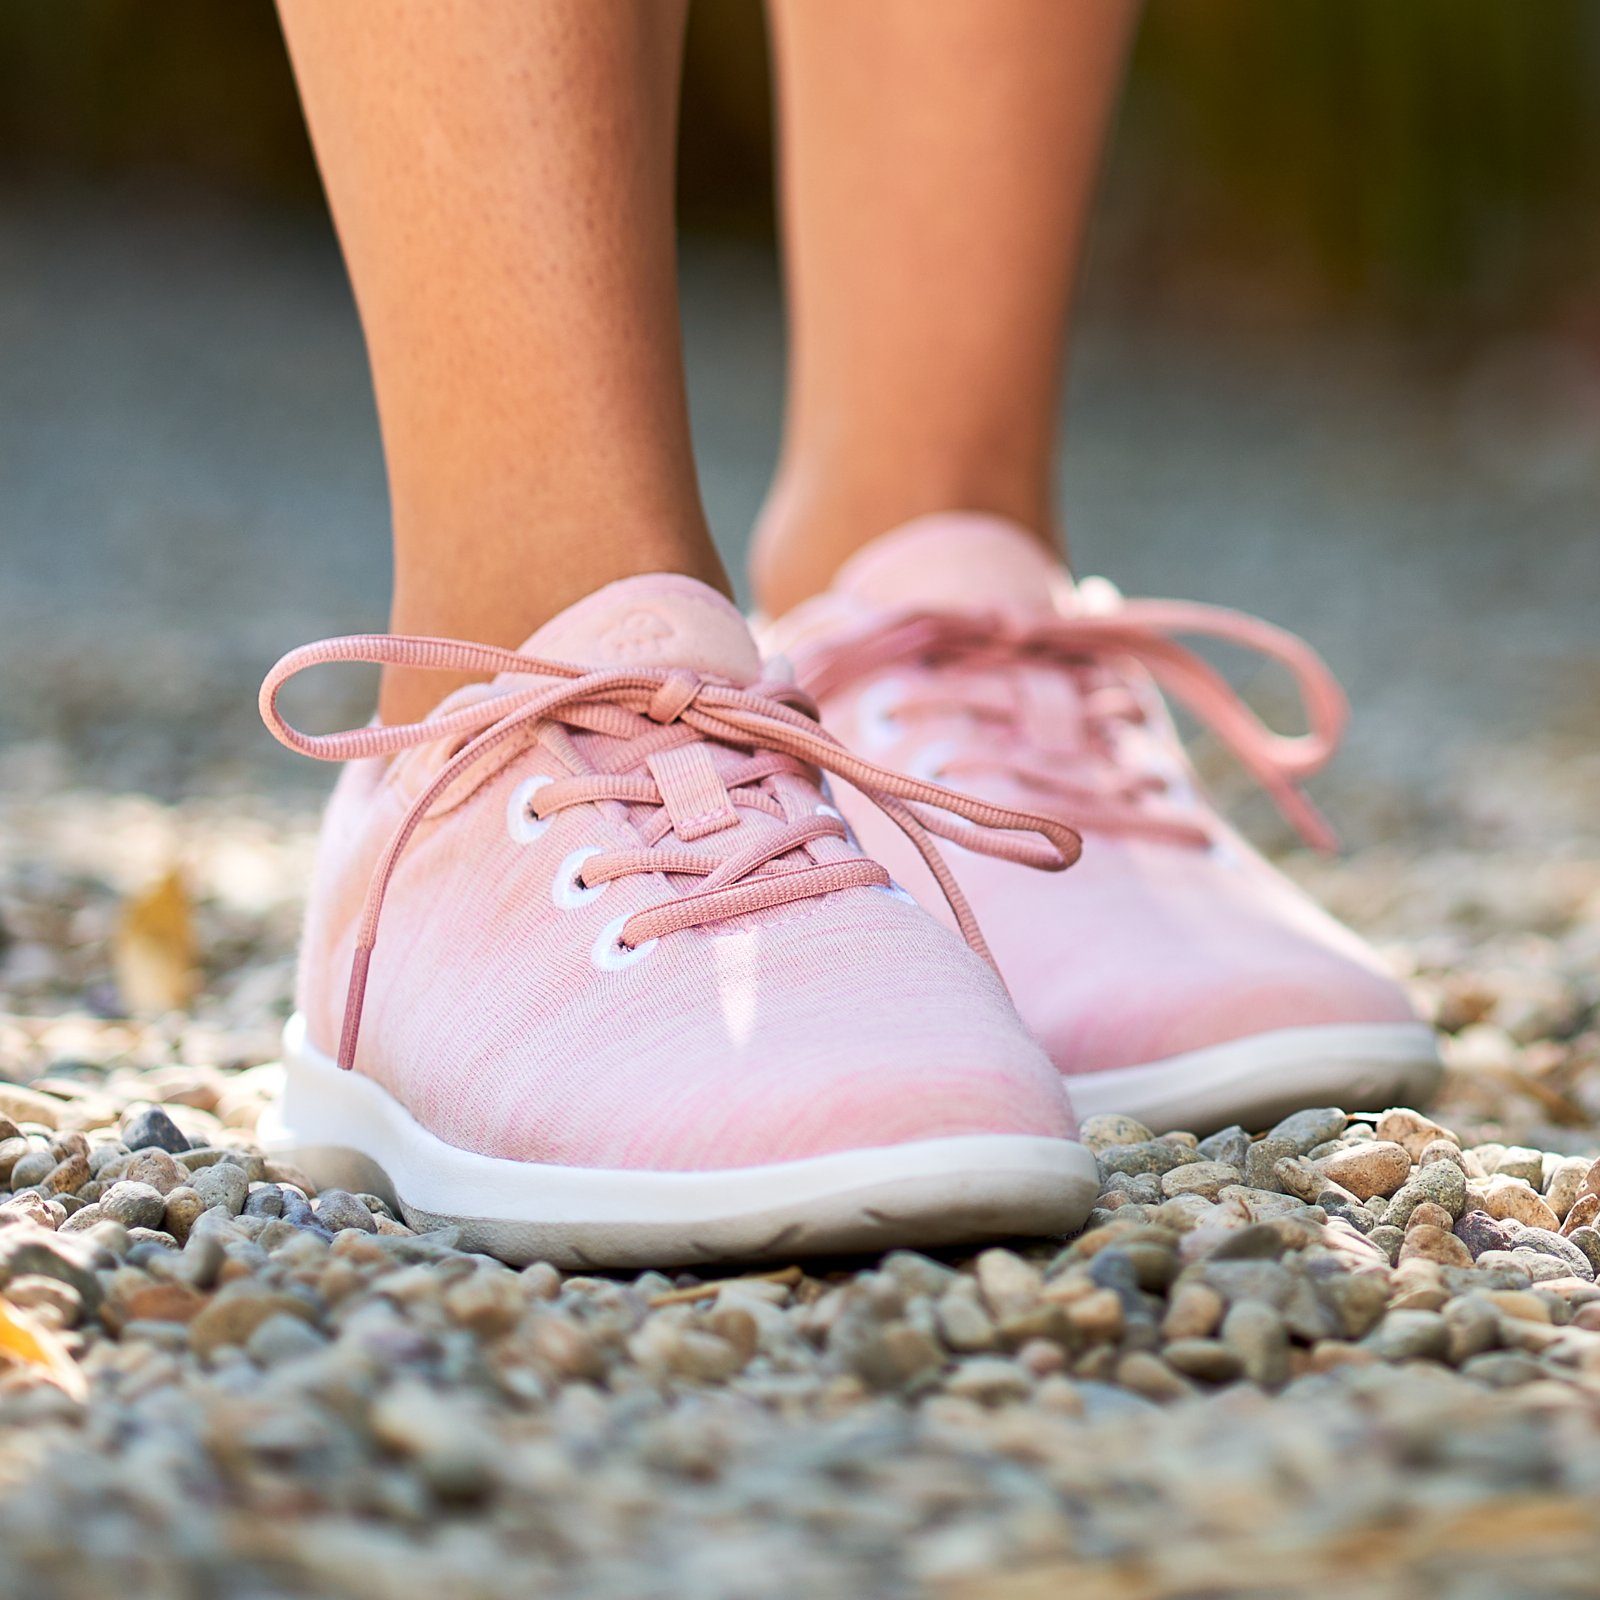 Merinowolle Sportschuhe merinos weicher aus rosa Up, Lace- Sneaker - Bequeme atmungsaktive merinoshoes.de Damen Schuhe